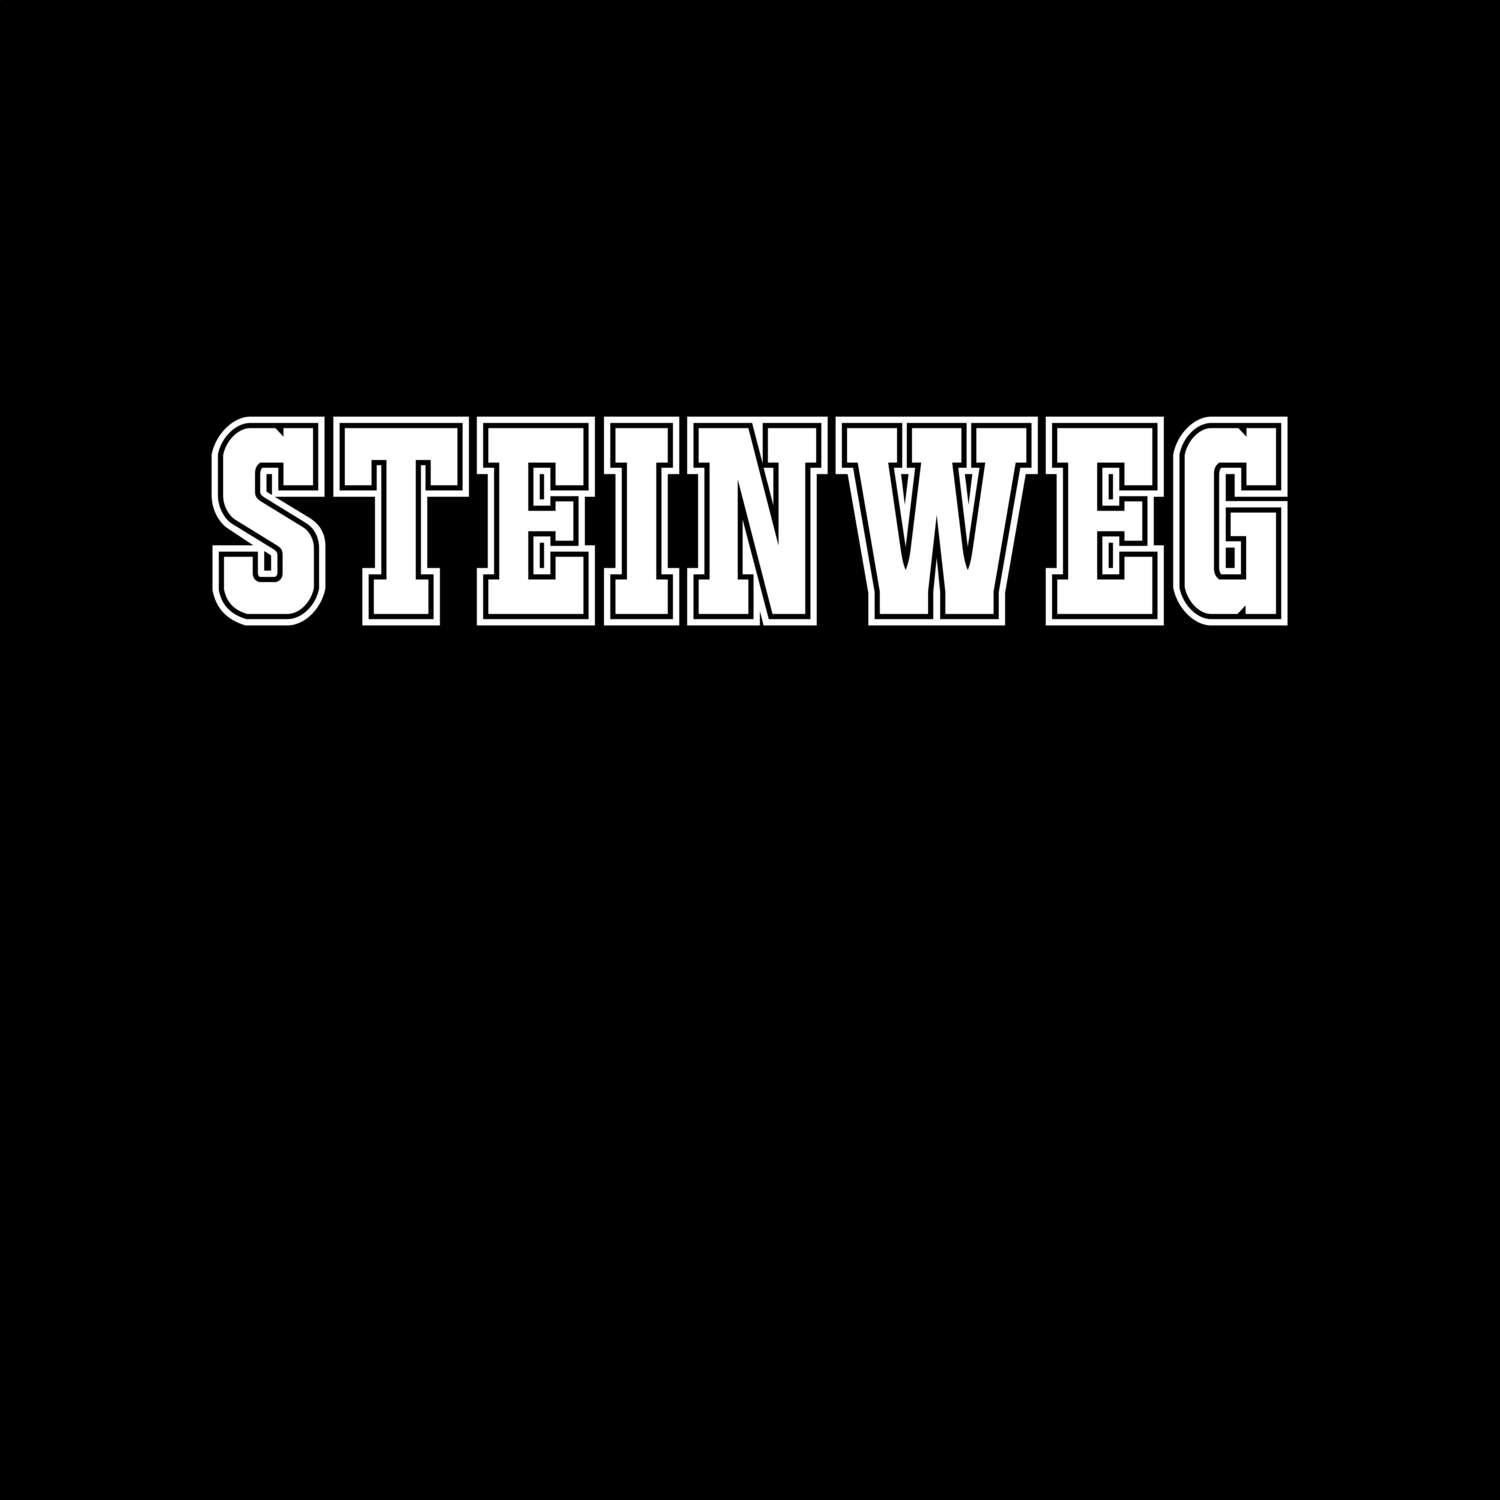 Steinweg T-Shirt »Classic«